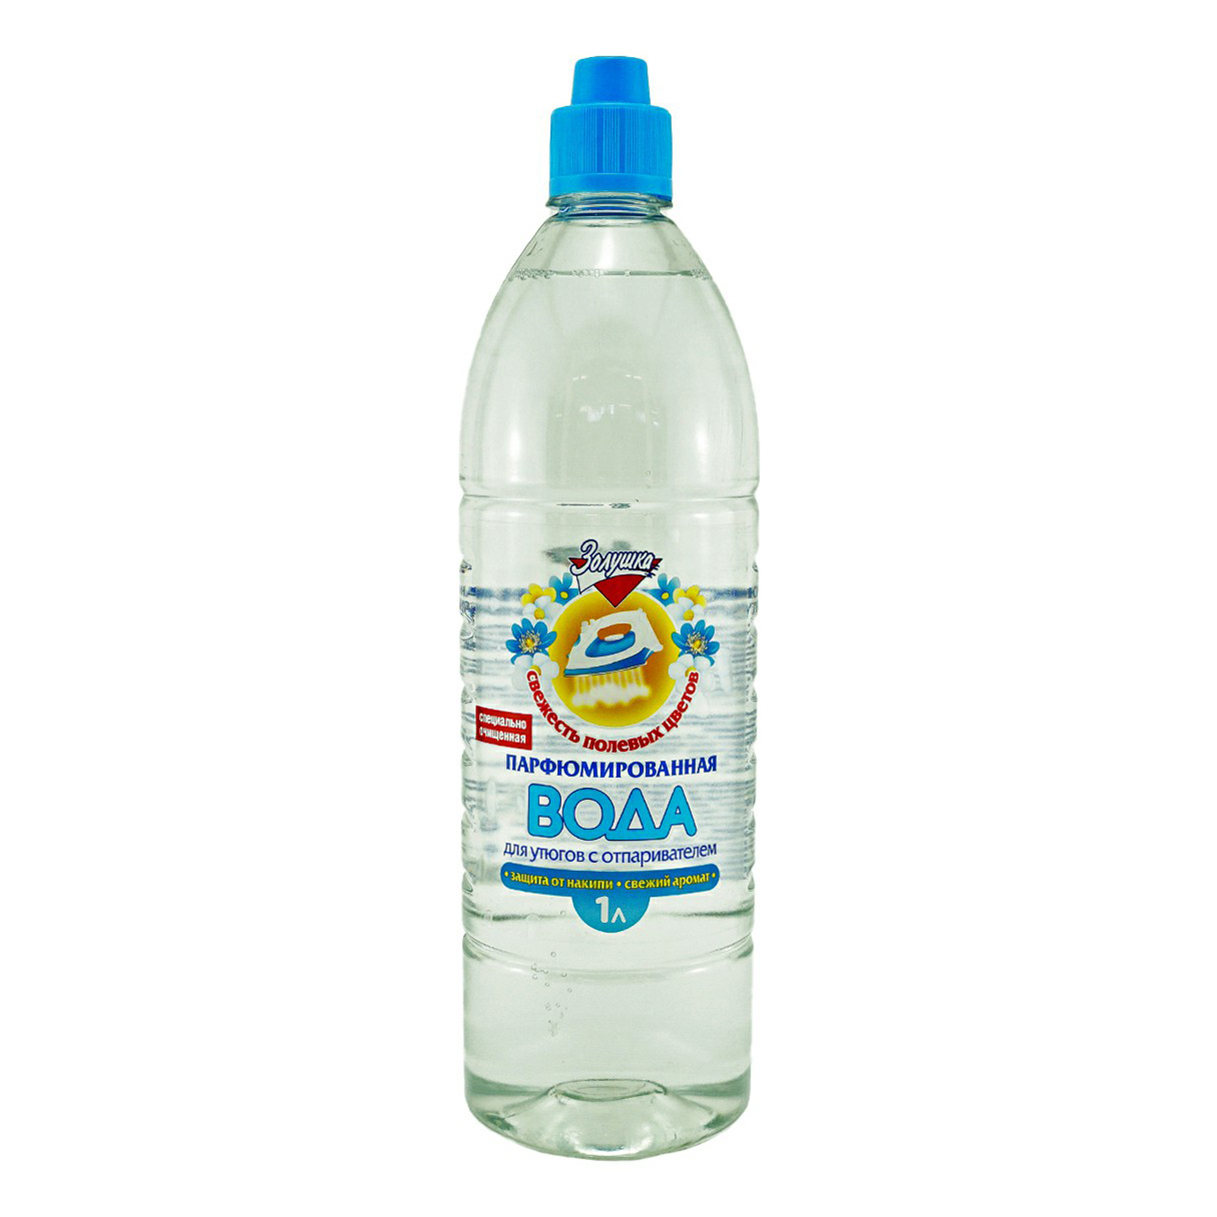 Вода Золушка для утюгов парфюмированная 1 л парфюмированная вода для утюгов и парогенераторов brezo